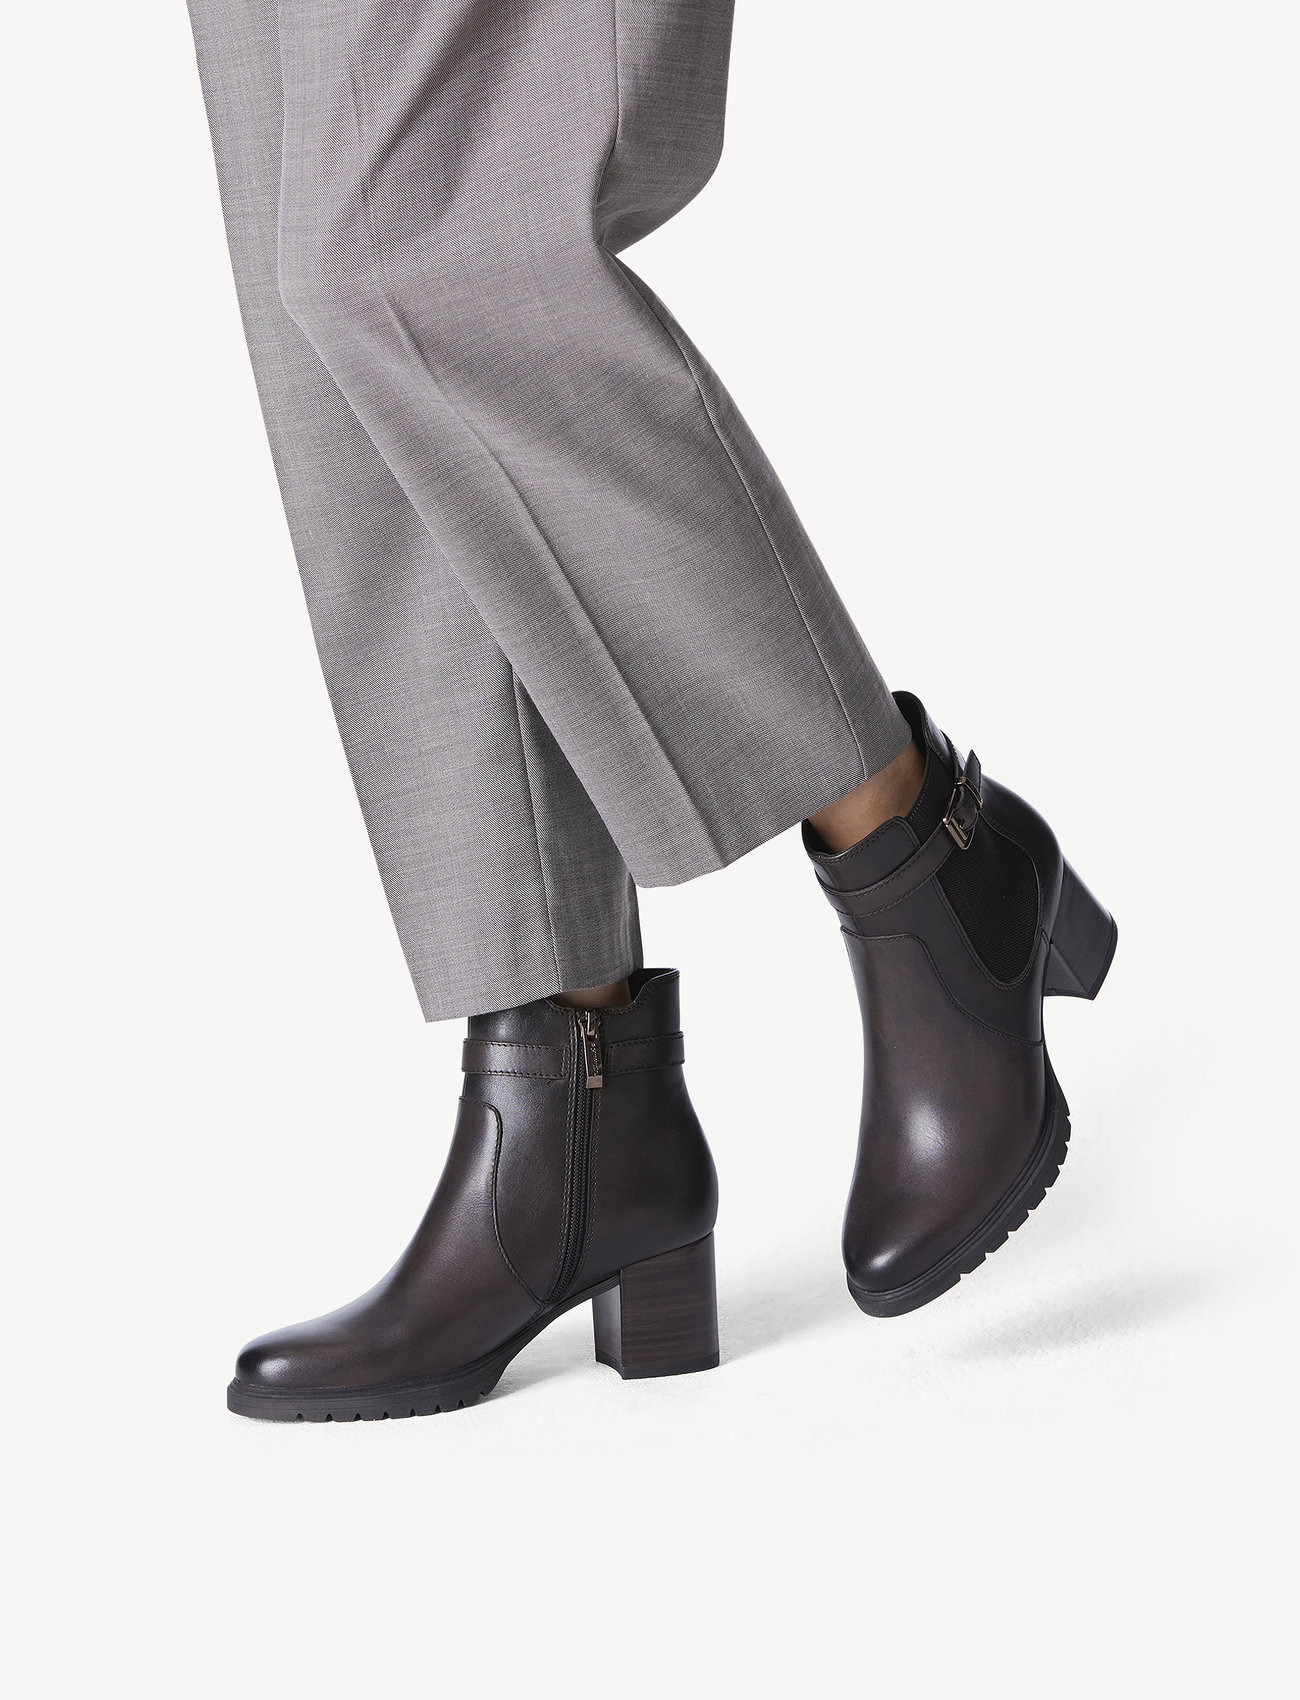 Tamaris - Women Boots - hohe absätze - mocca - 1